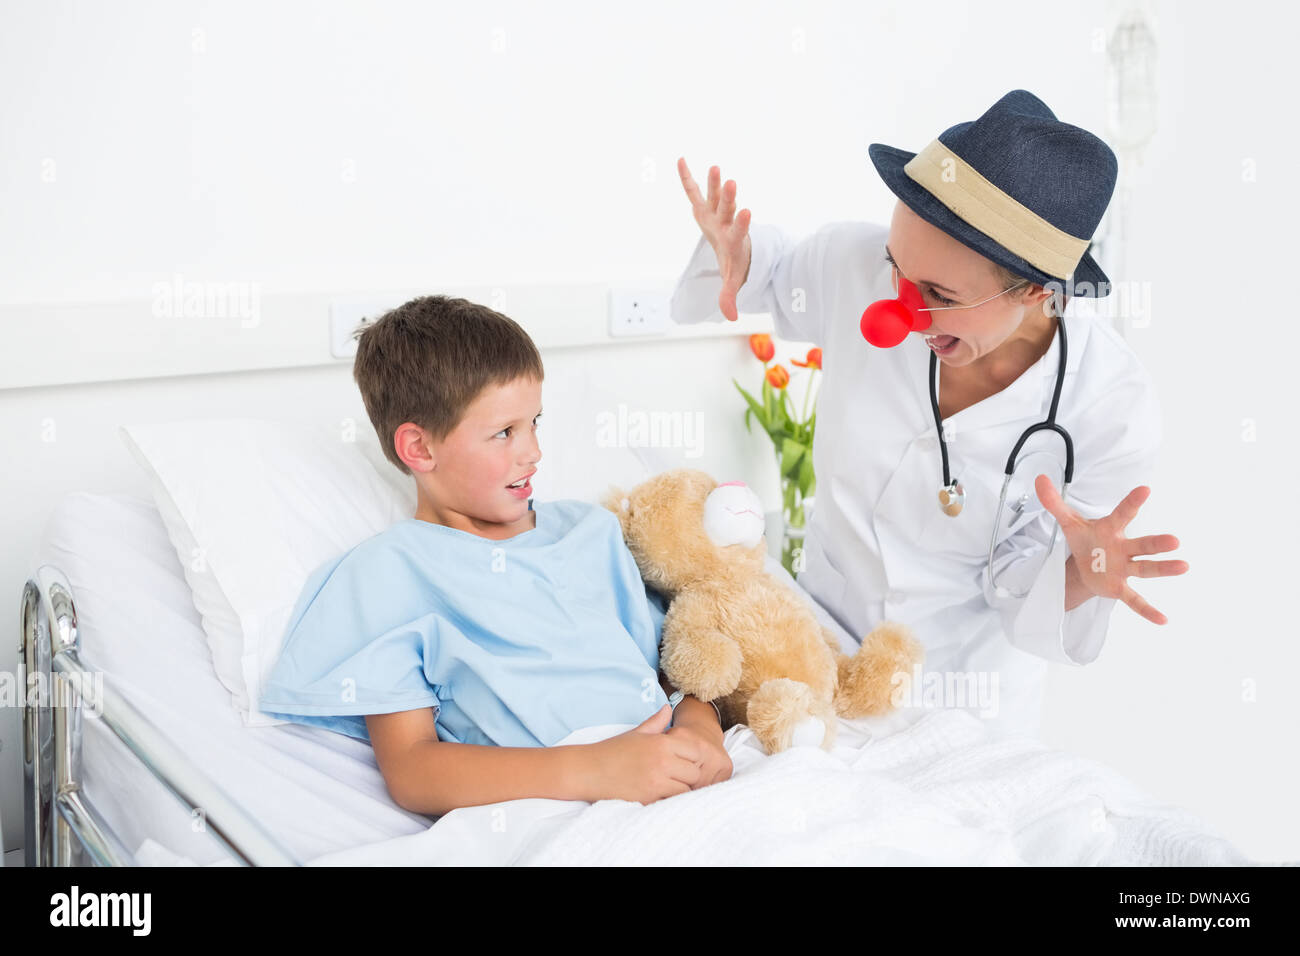 Включи дети врачи. Пациент мальчик. Костюм больного в больнице для больных детей. Доктор у больного мальчика. Доктор клоун.